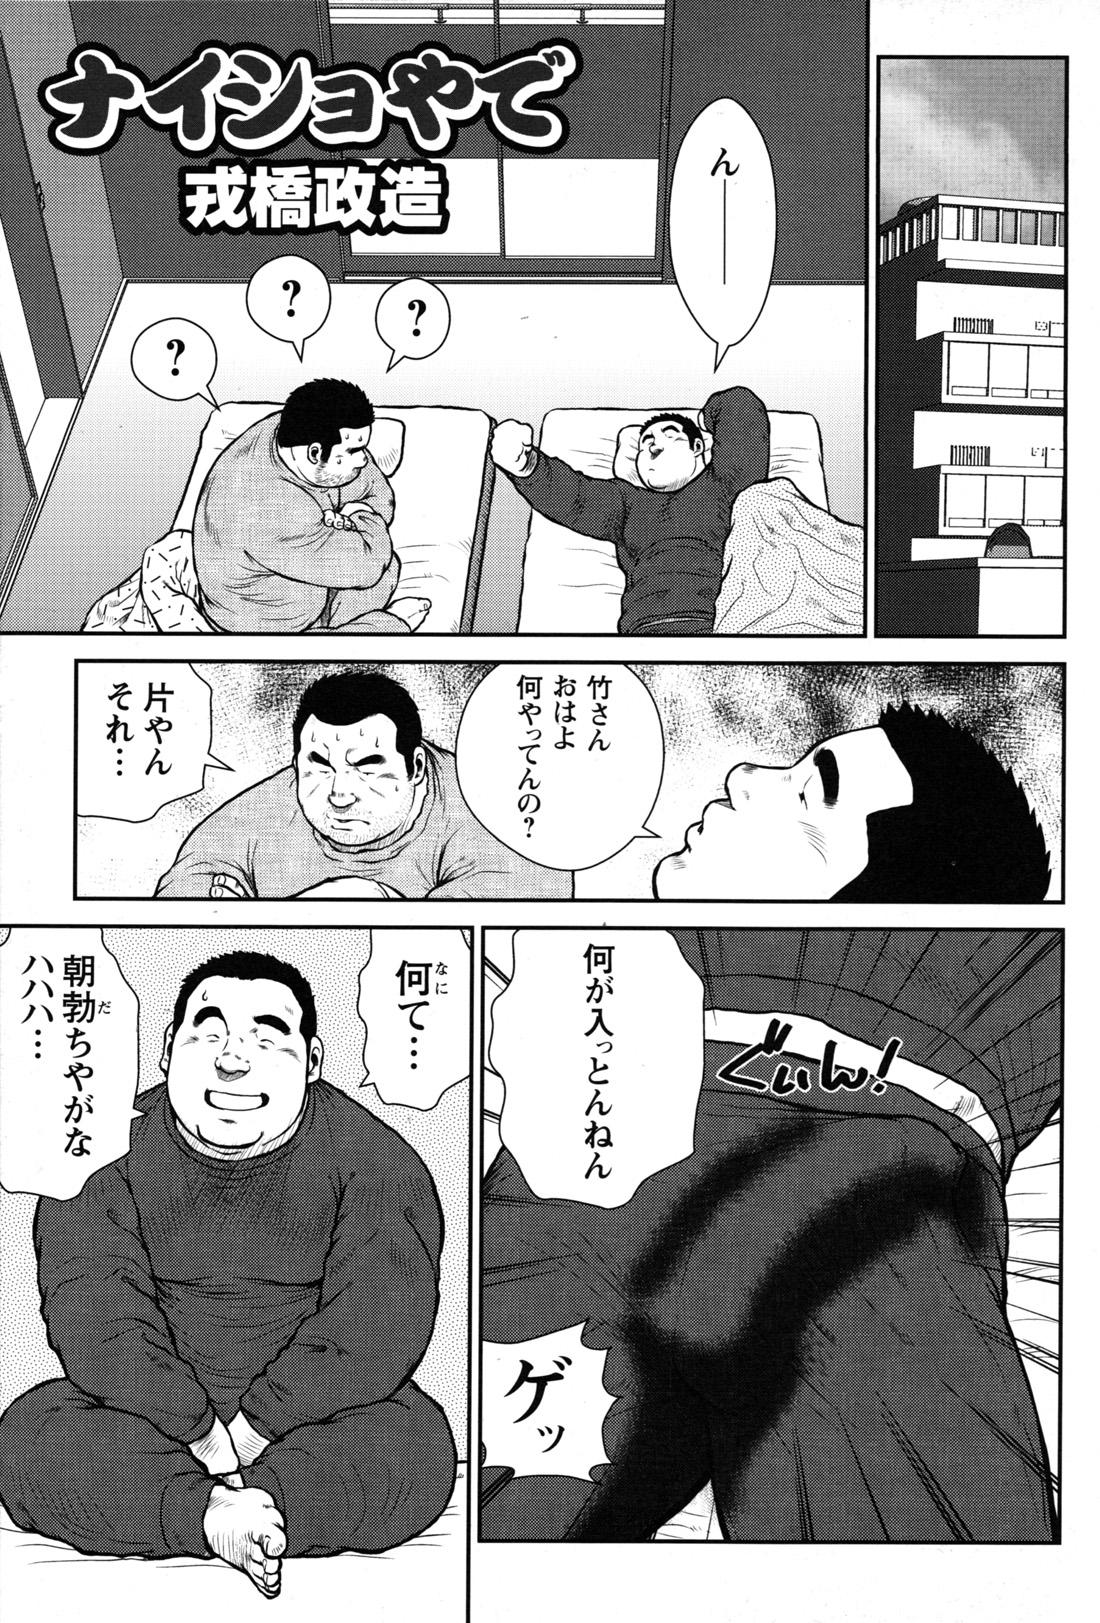 Comic G-men Gaho No.09 Gacchibi Zeme 104